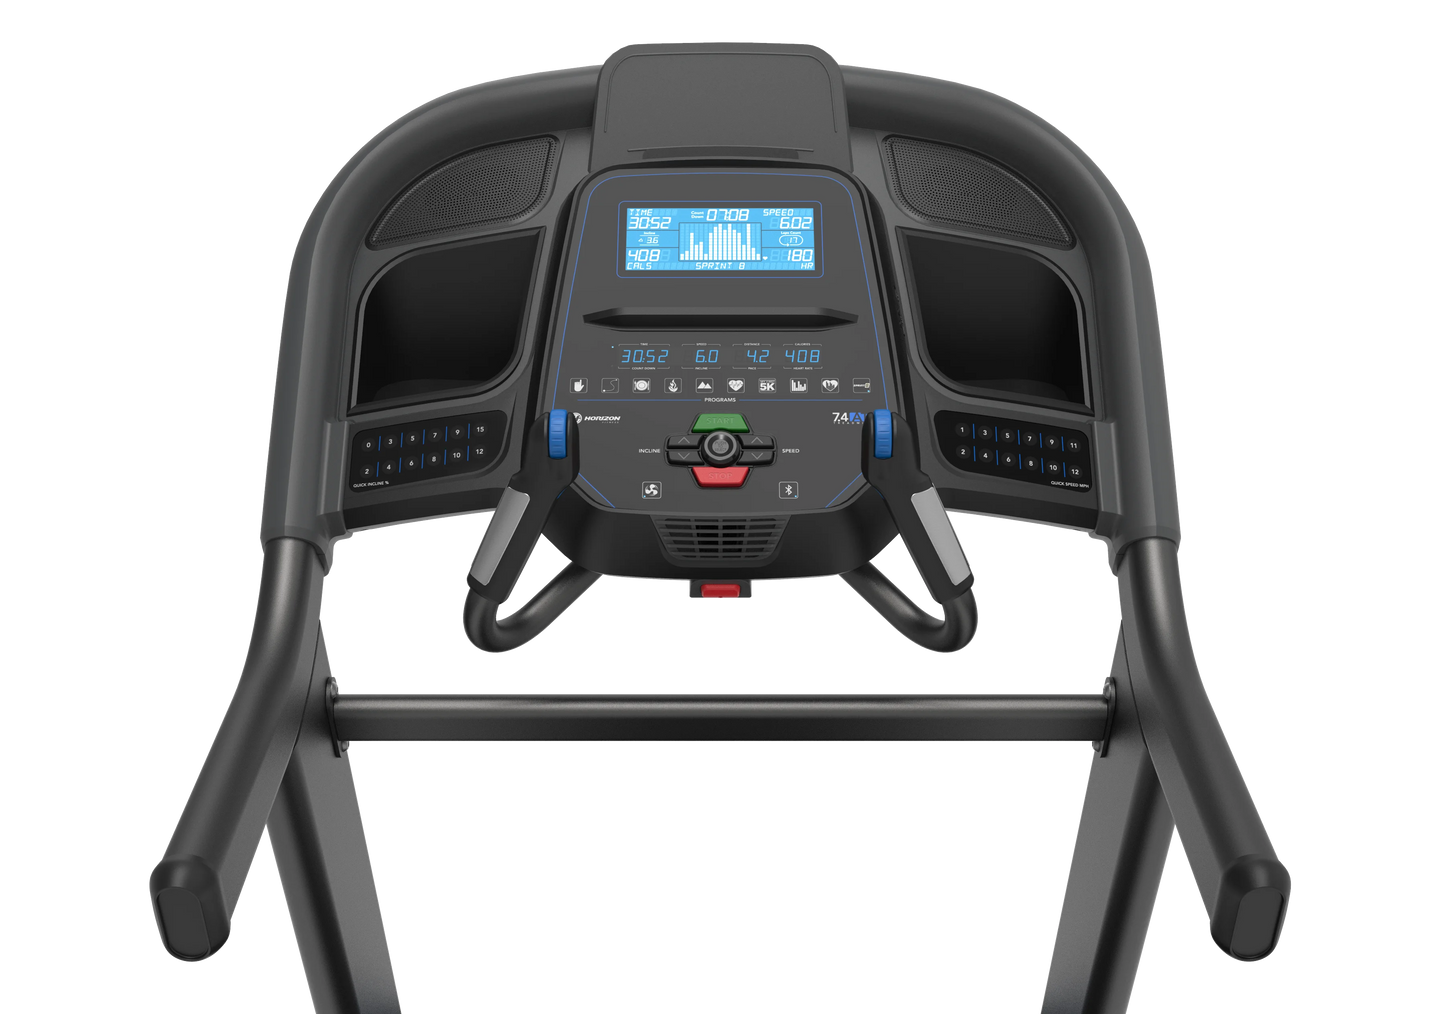 NEW 2023 Horizon 7.4 AT Treadmill